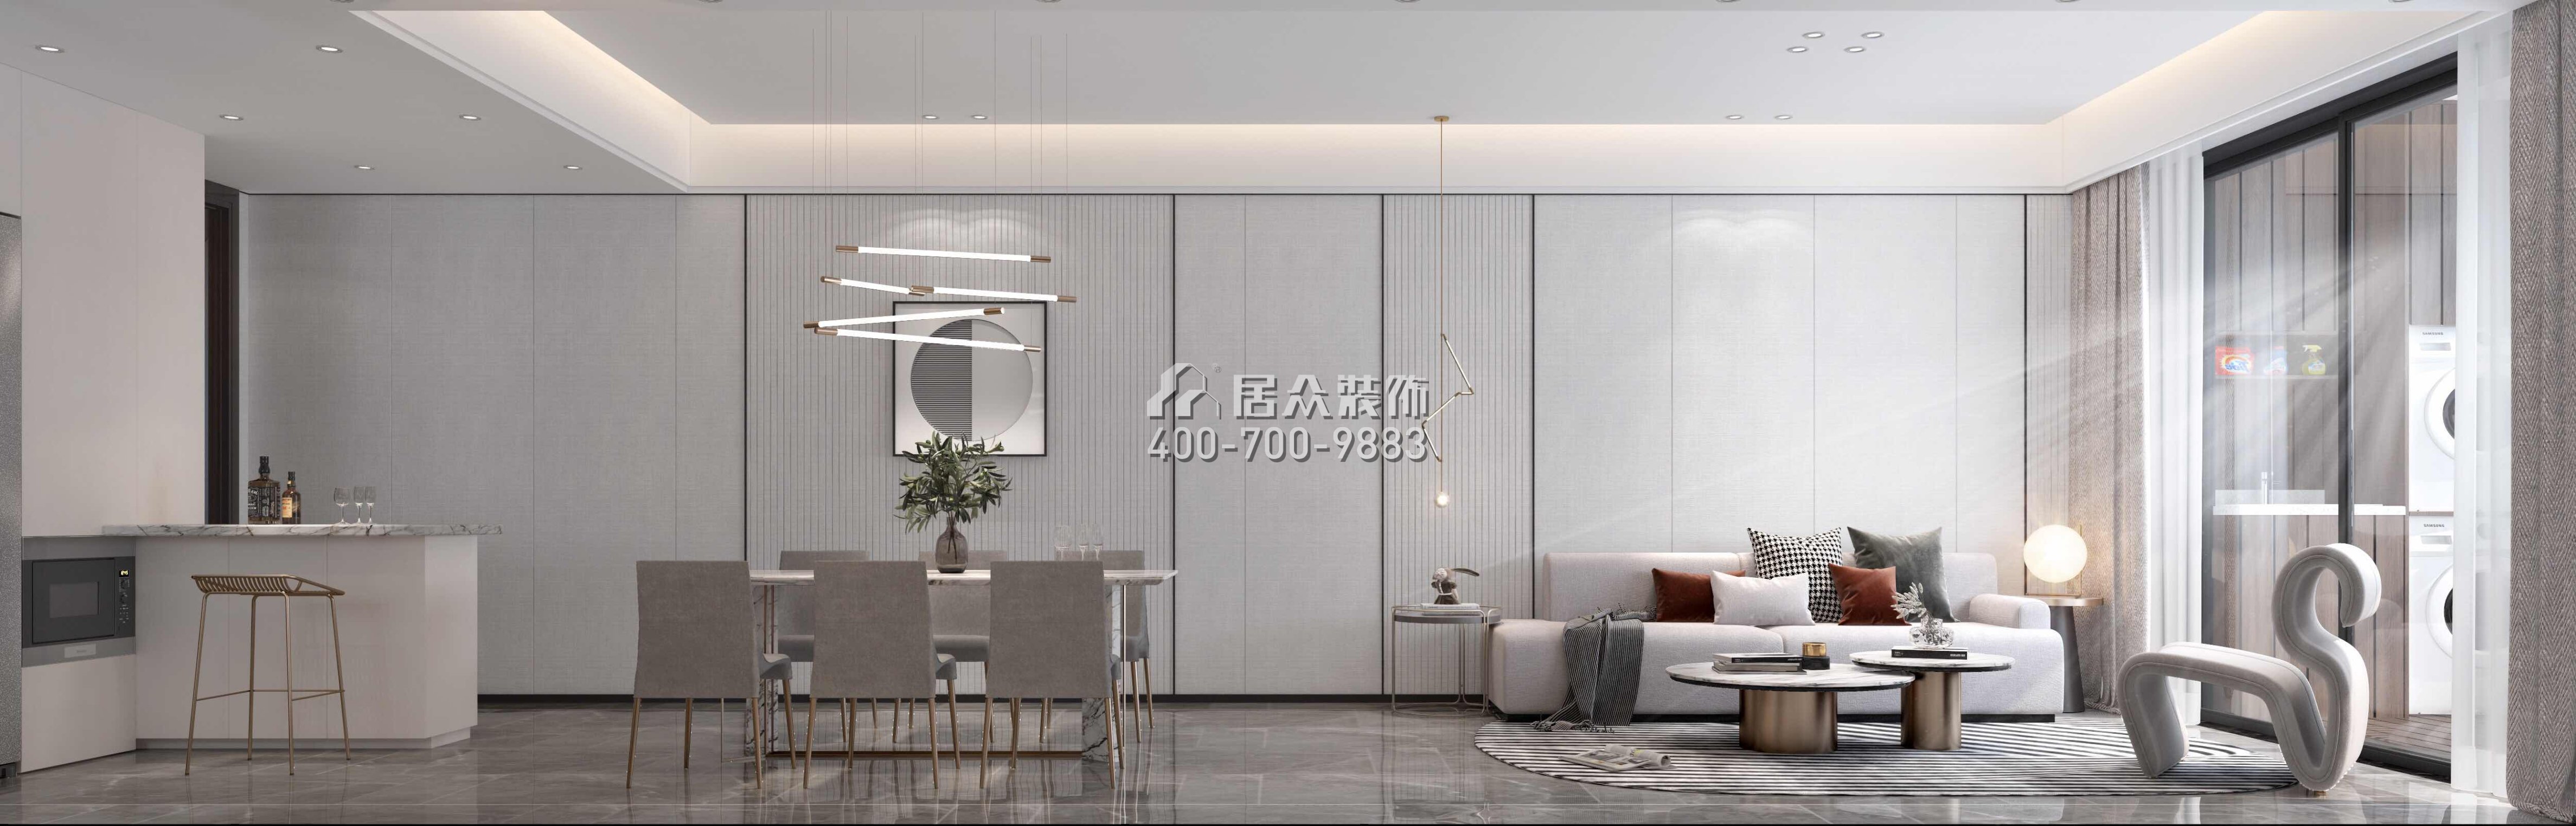 天鹅堡三期122平方米现代简约风格平层户型客厅装修效果图